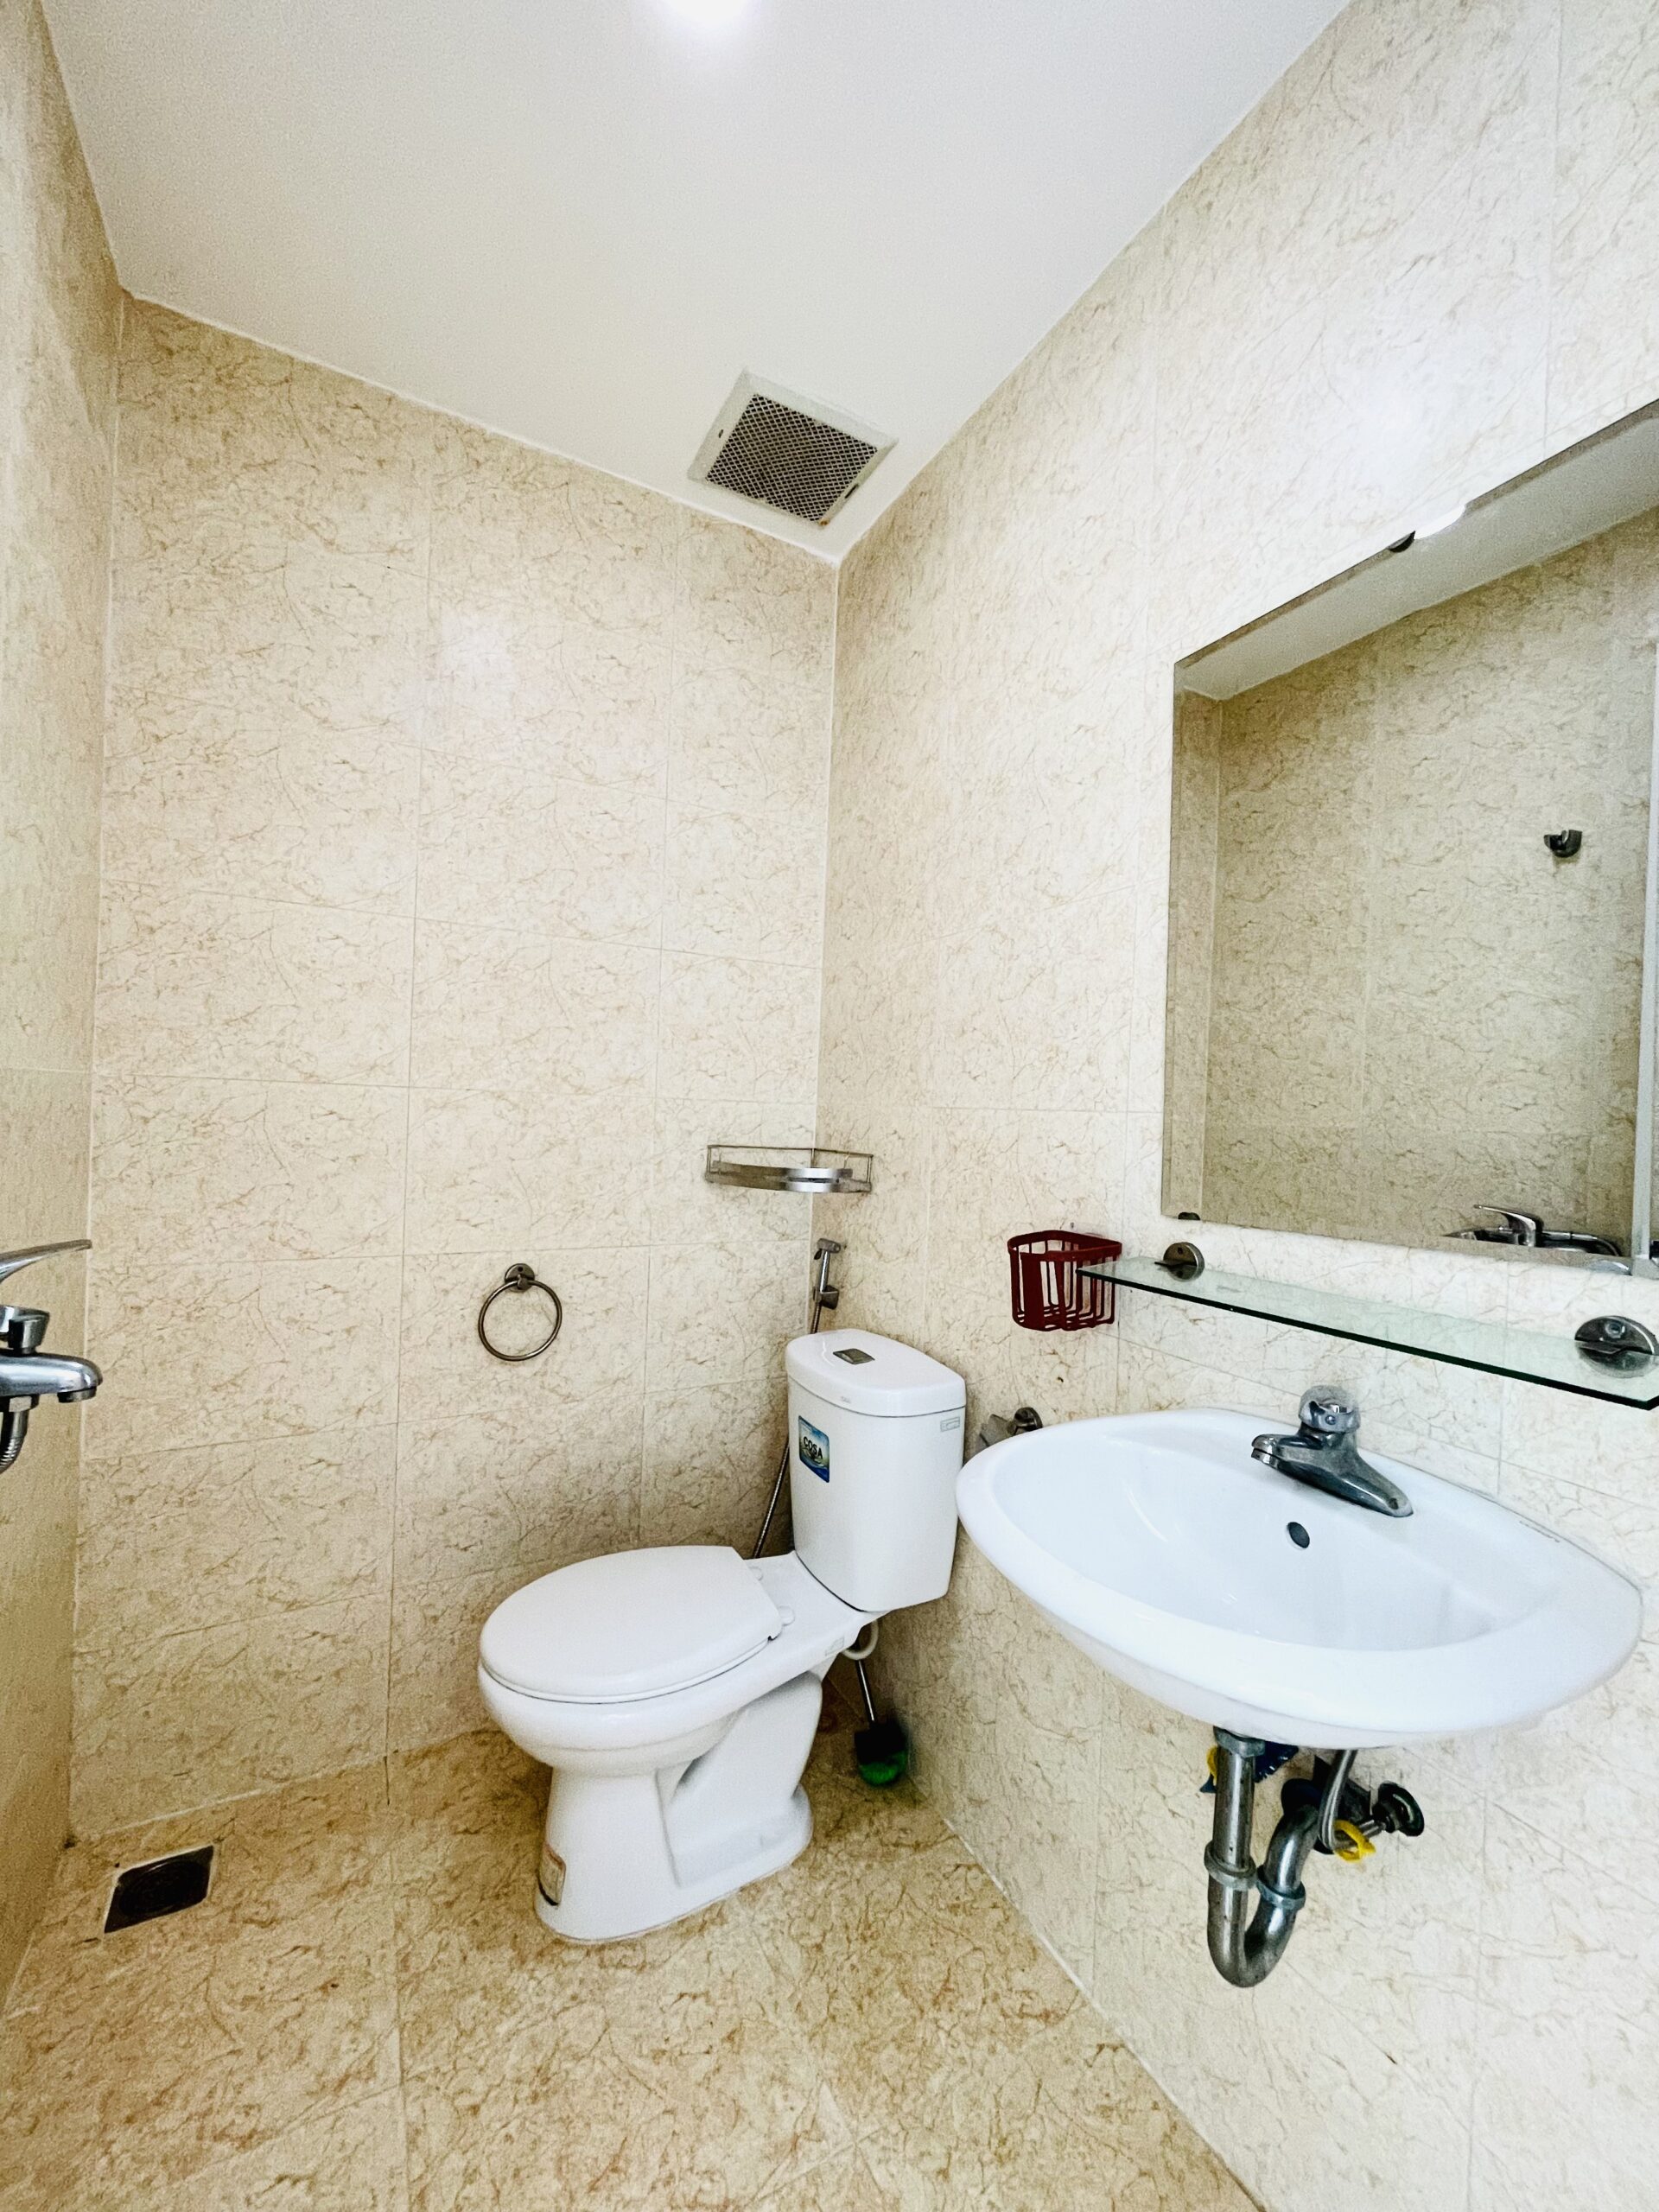 Phòng toilet - Căn hộ Mường Thanh Viễn Triều tầng 10 OC2A | Đông nam, rất mát